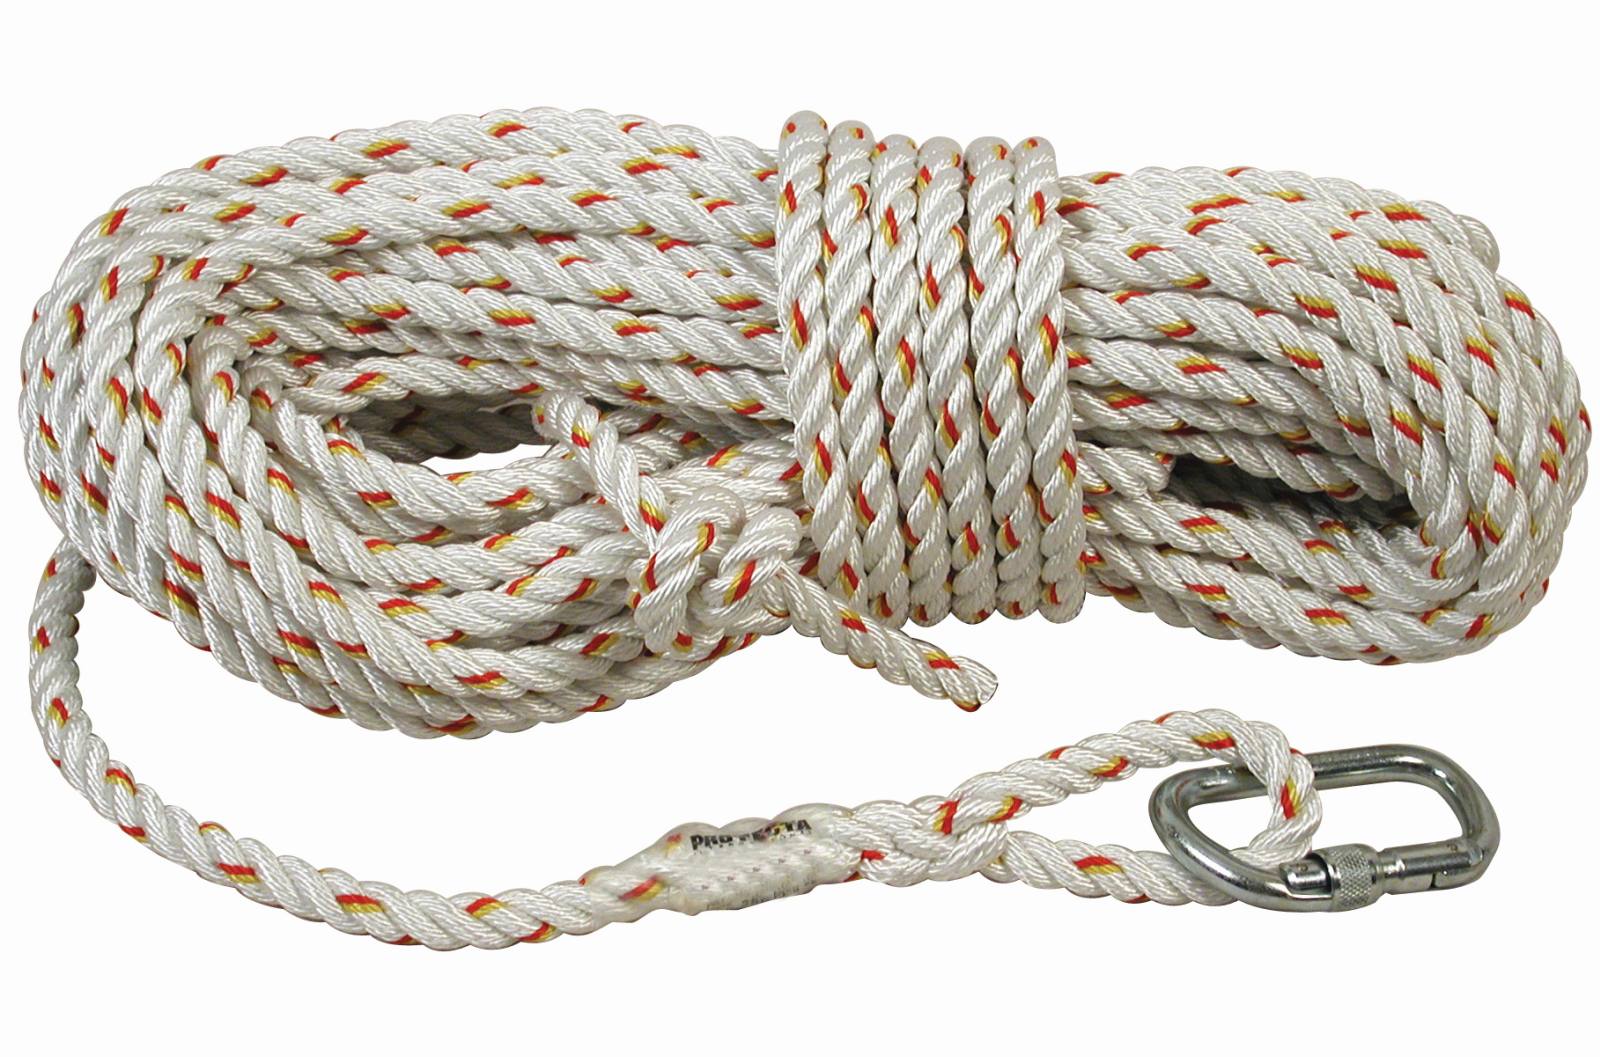 3M PROTECTA Seil für mitlaufendes Auffanggerät Cobra, Länge: 5 m, gedrehtes Seil 14 mm , AJ501 Karabiner Öffnungsweite 17 mm, 5,0 m